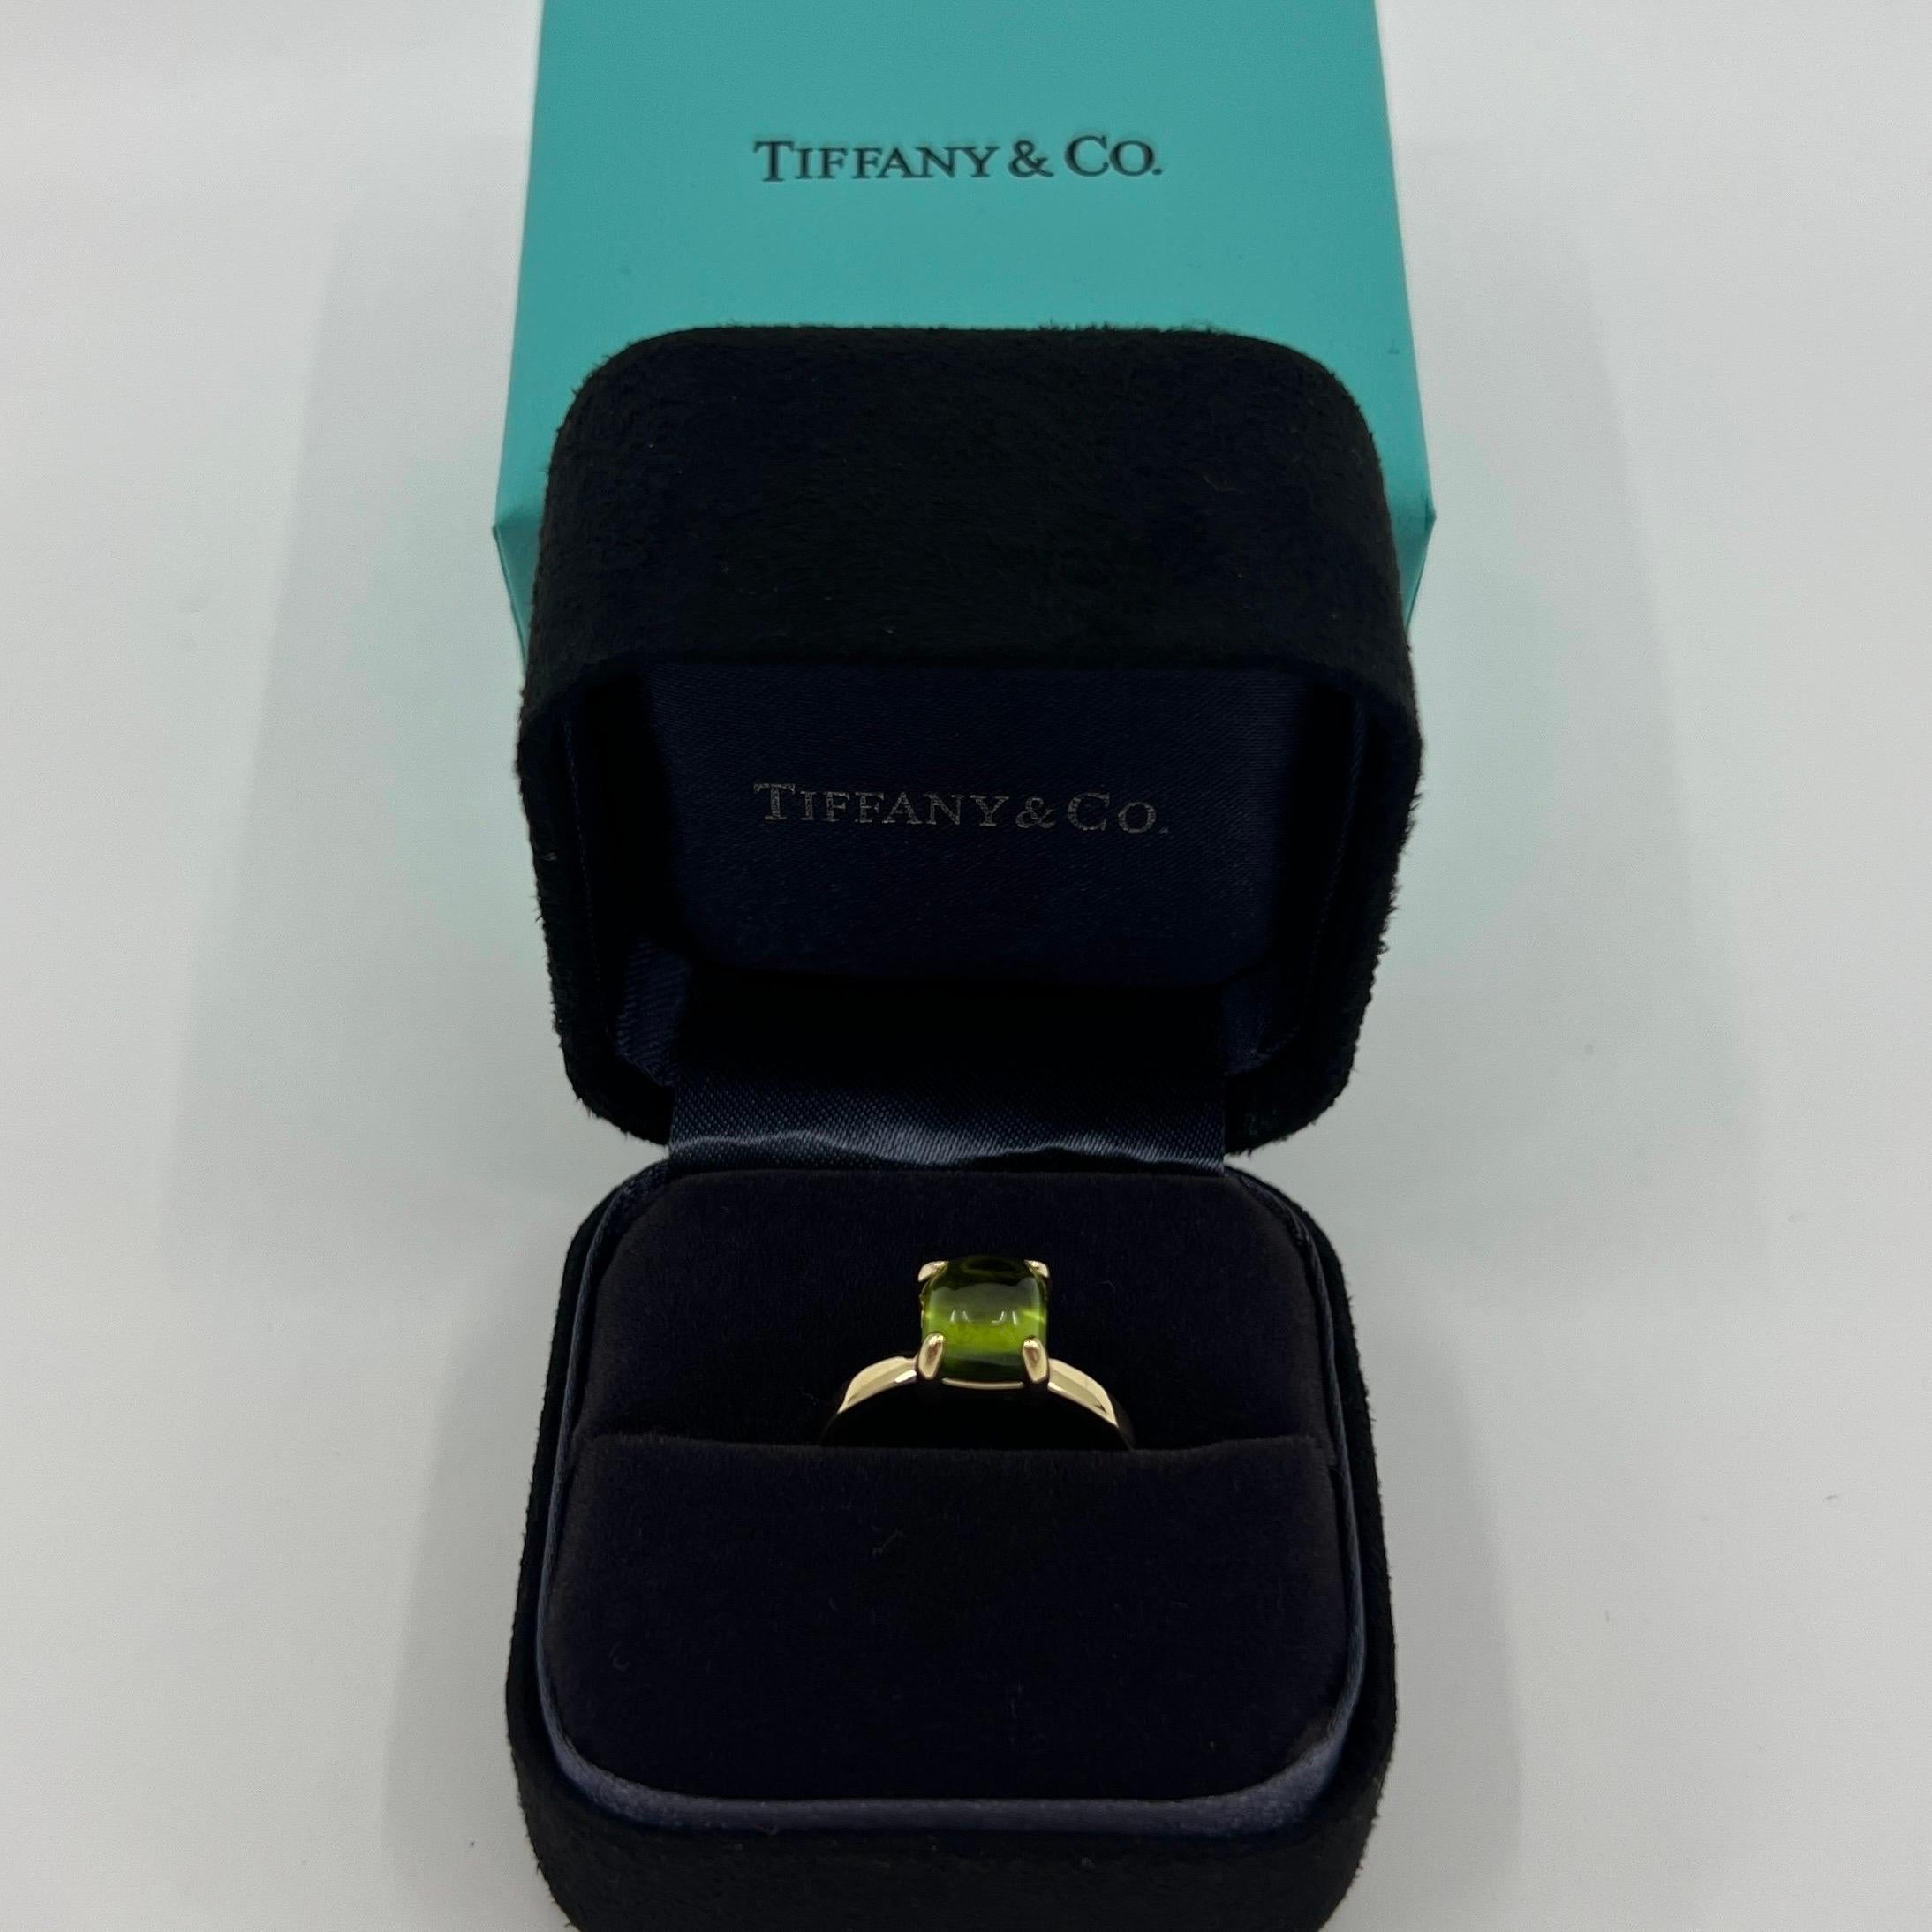 Seltenes Vintage von Tiffany & Co. Paloma Picasso Grüner Peridot Zucker Stack 18k Gelbgold Ring.

Ein schöner und seltener zuckerhutgrüner Peridotring aus der Tiffany & Co Paloma Picasso Collection.

Edle Juweliere wie Tiffany verwenden für ihre